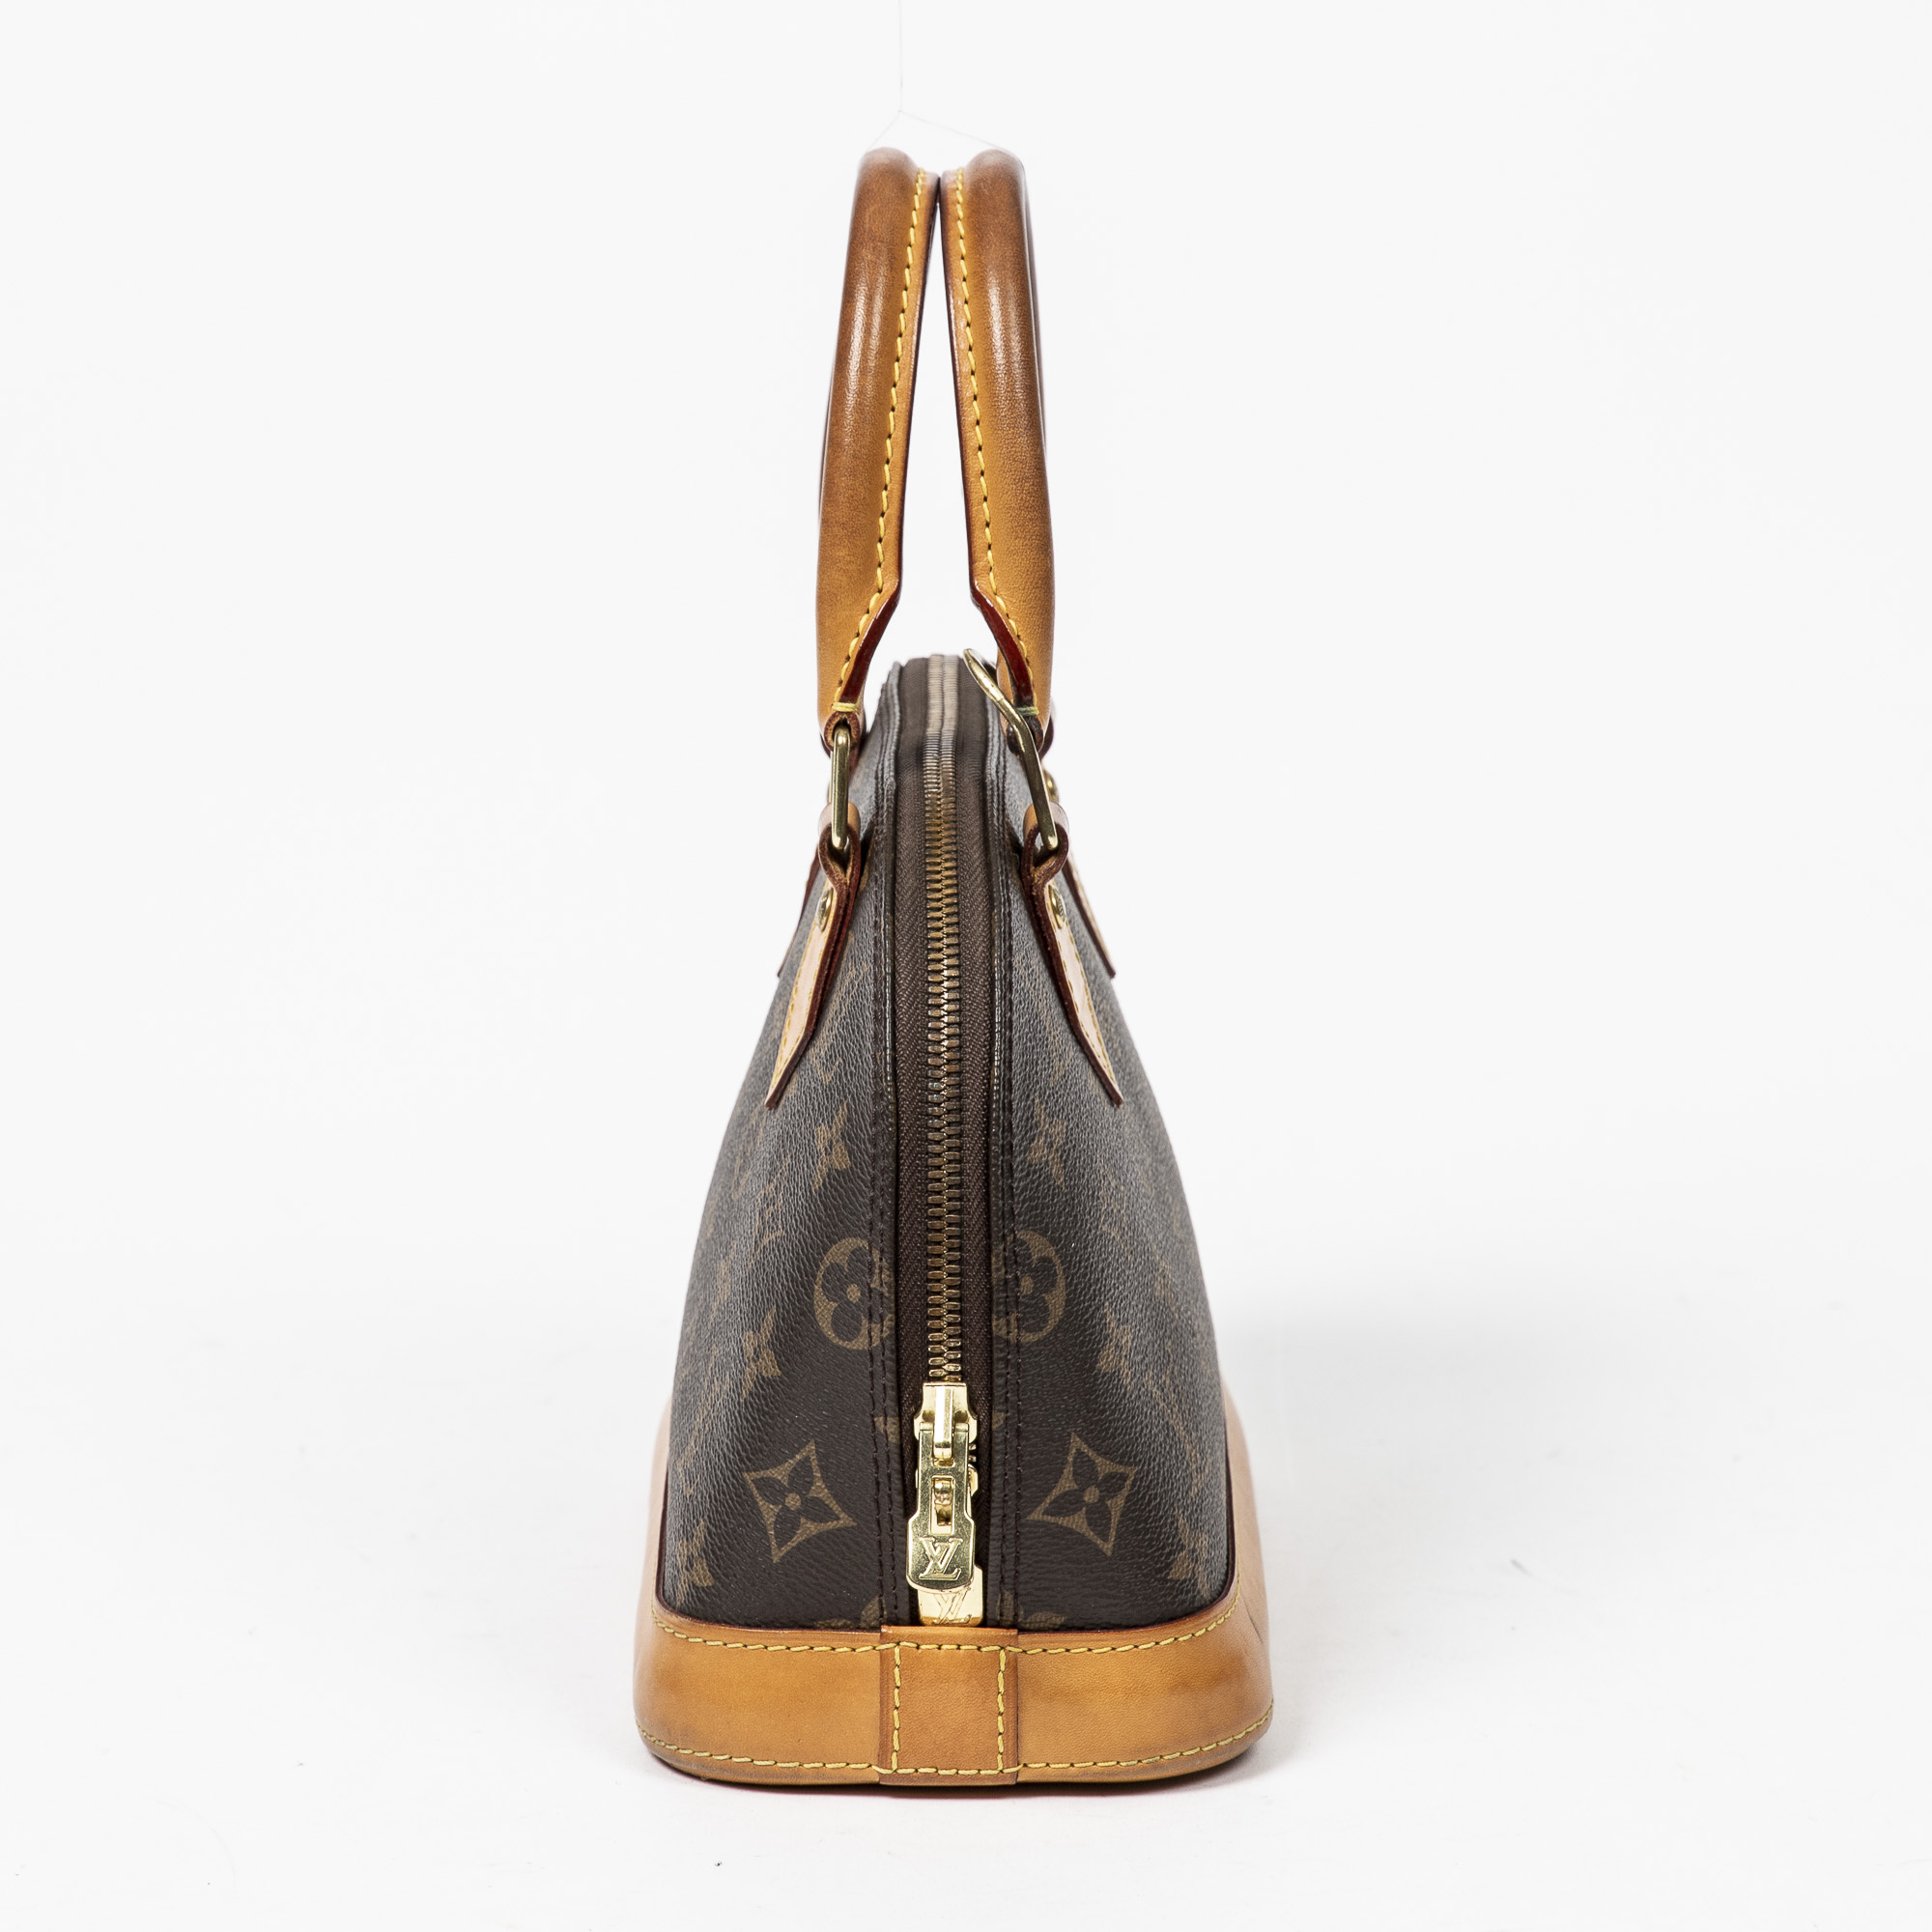 Sold at Auction: Louis Vuitton, Louis Vuitton Sac Baxter